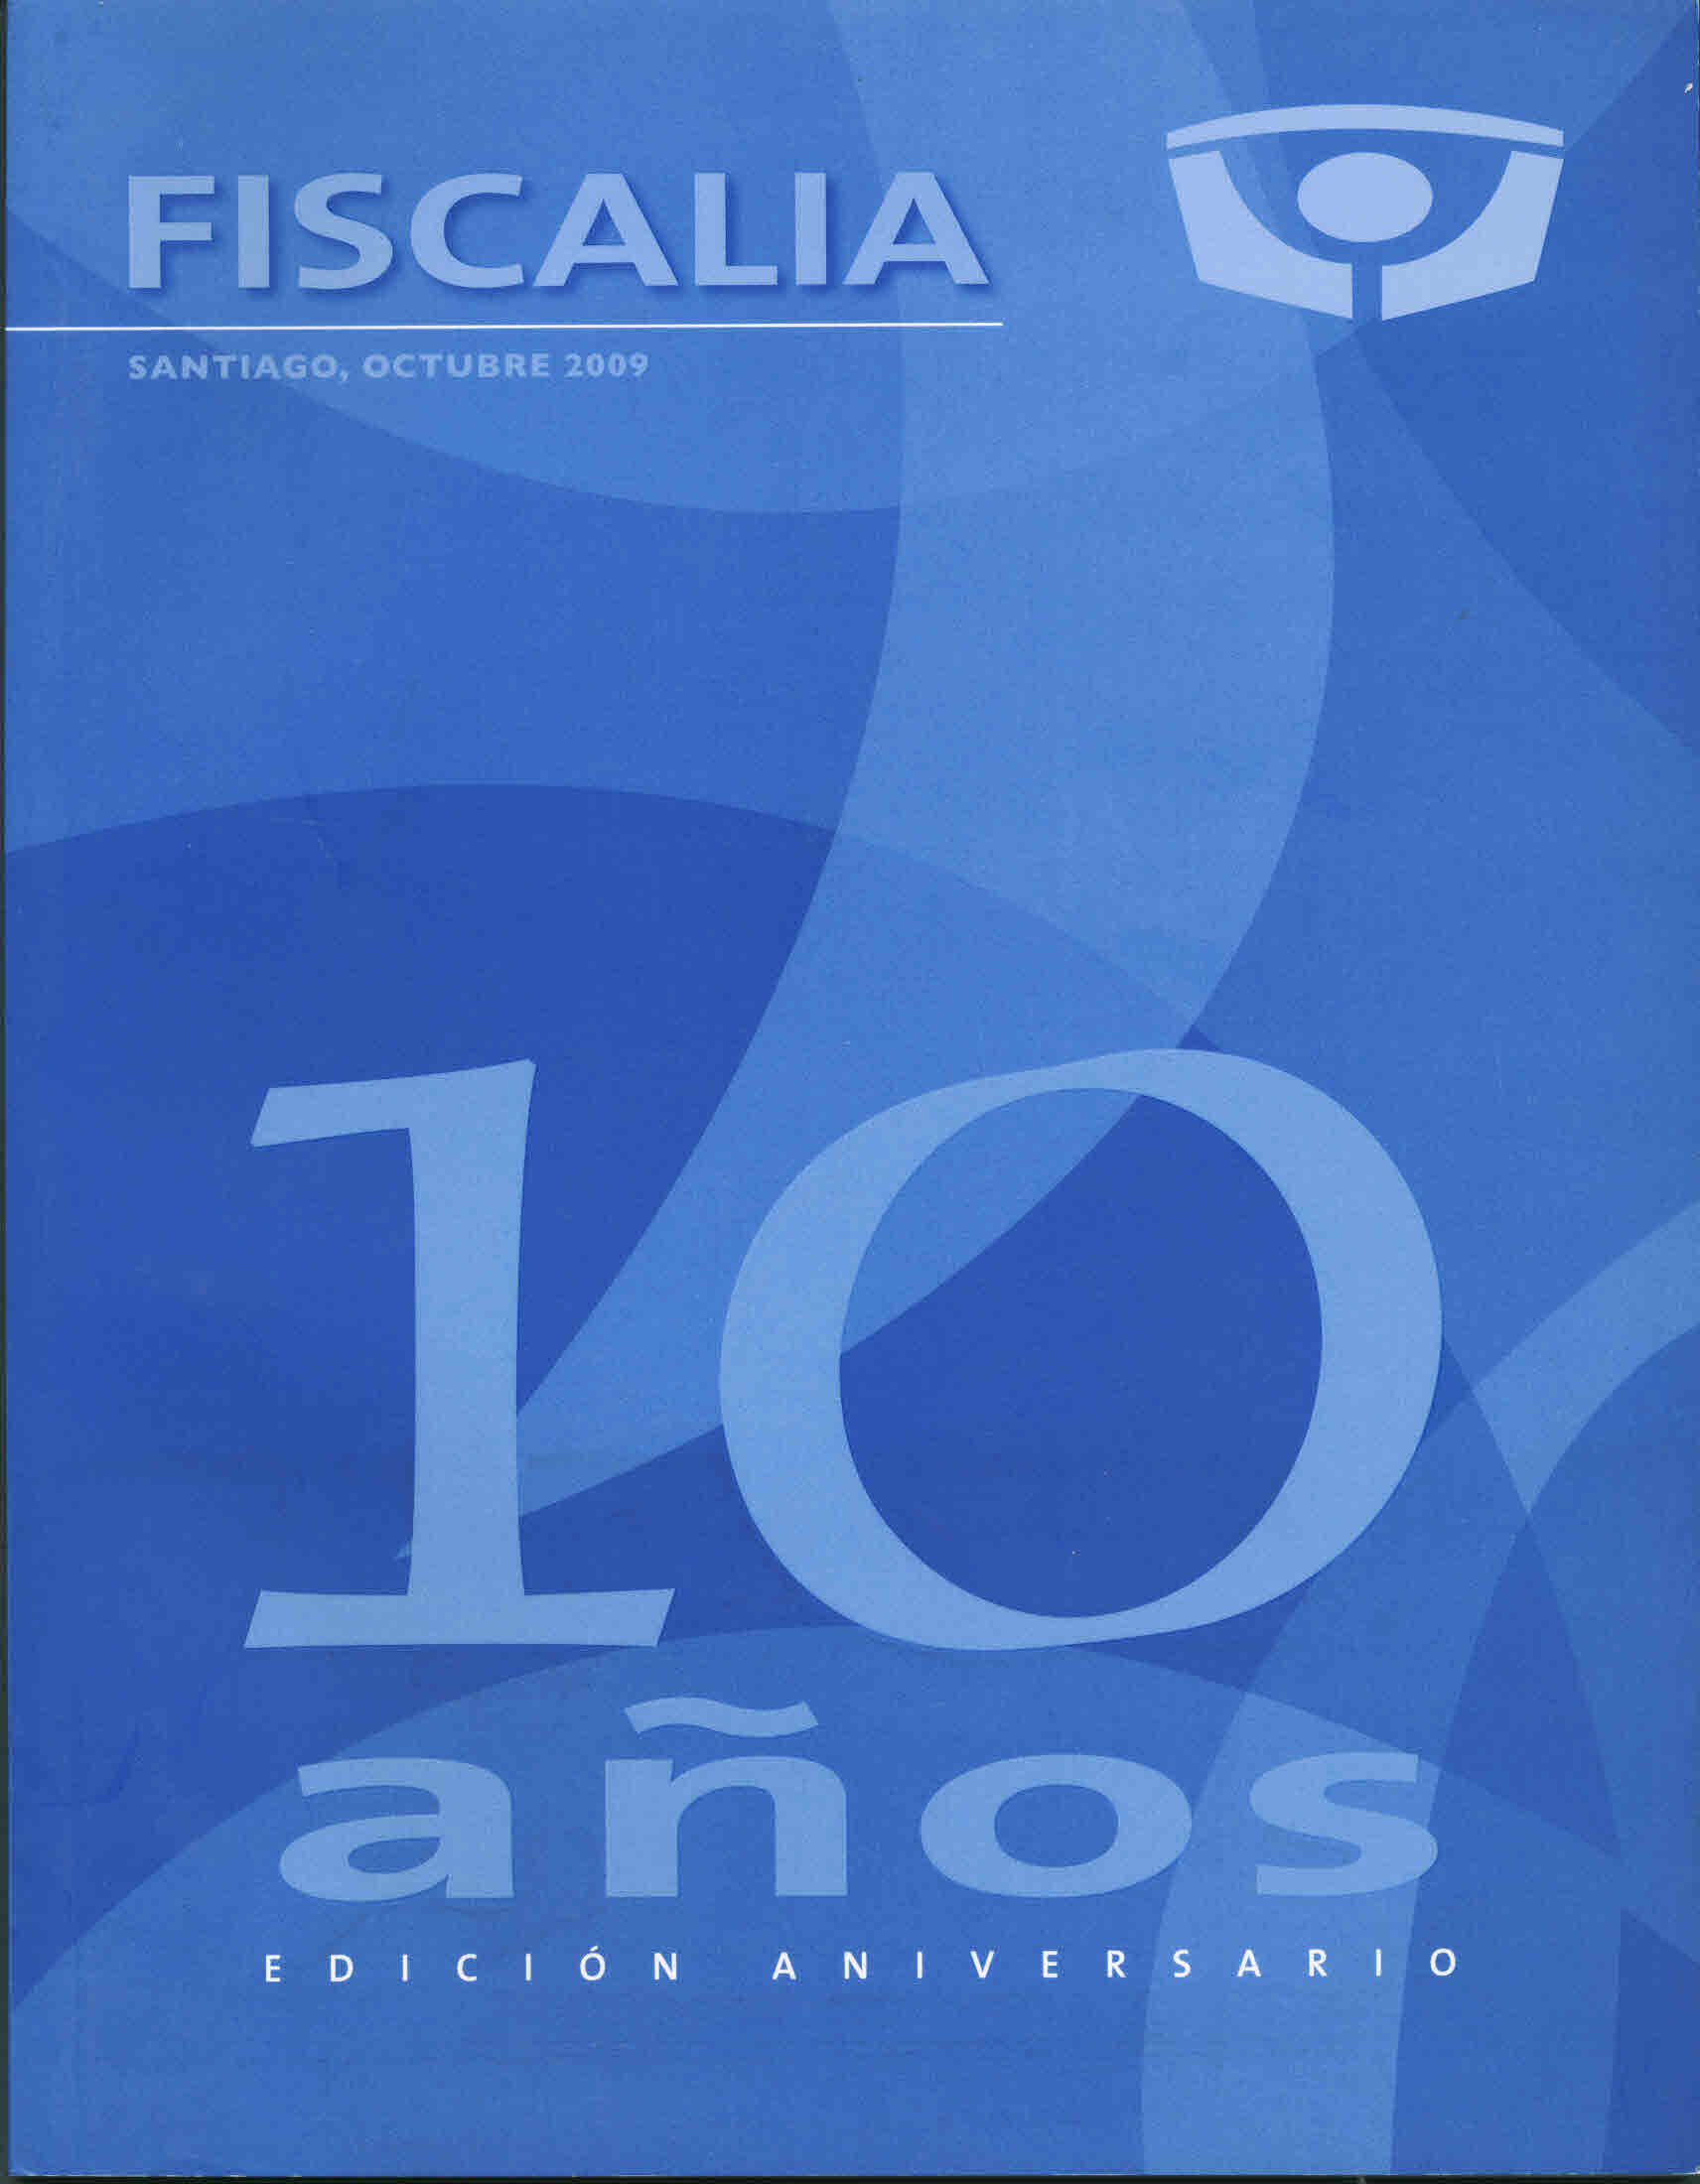 Fiscalia 10 años edición aniversario